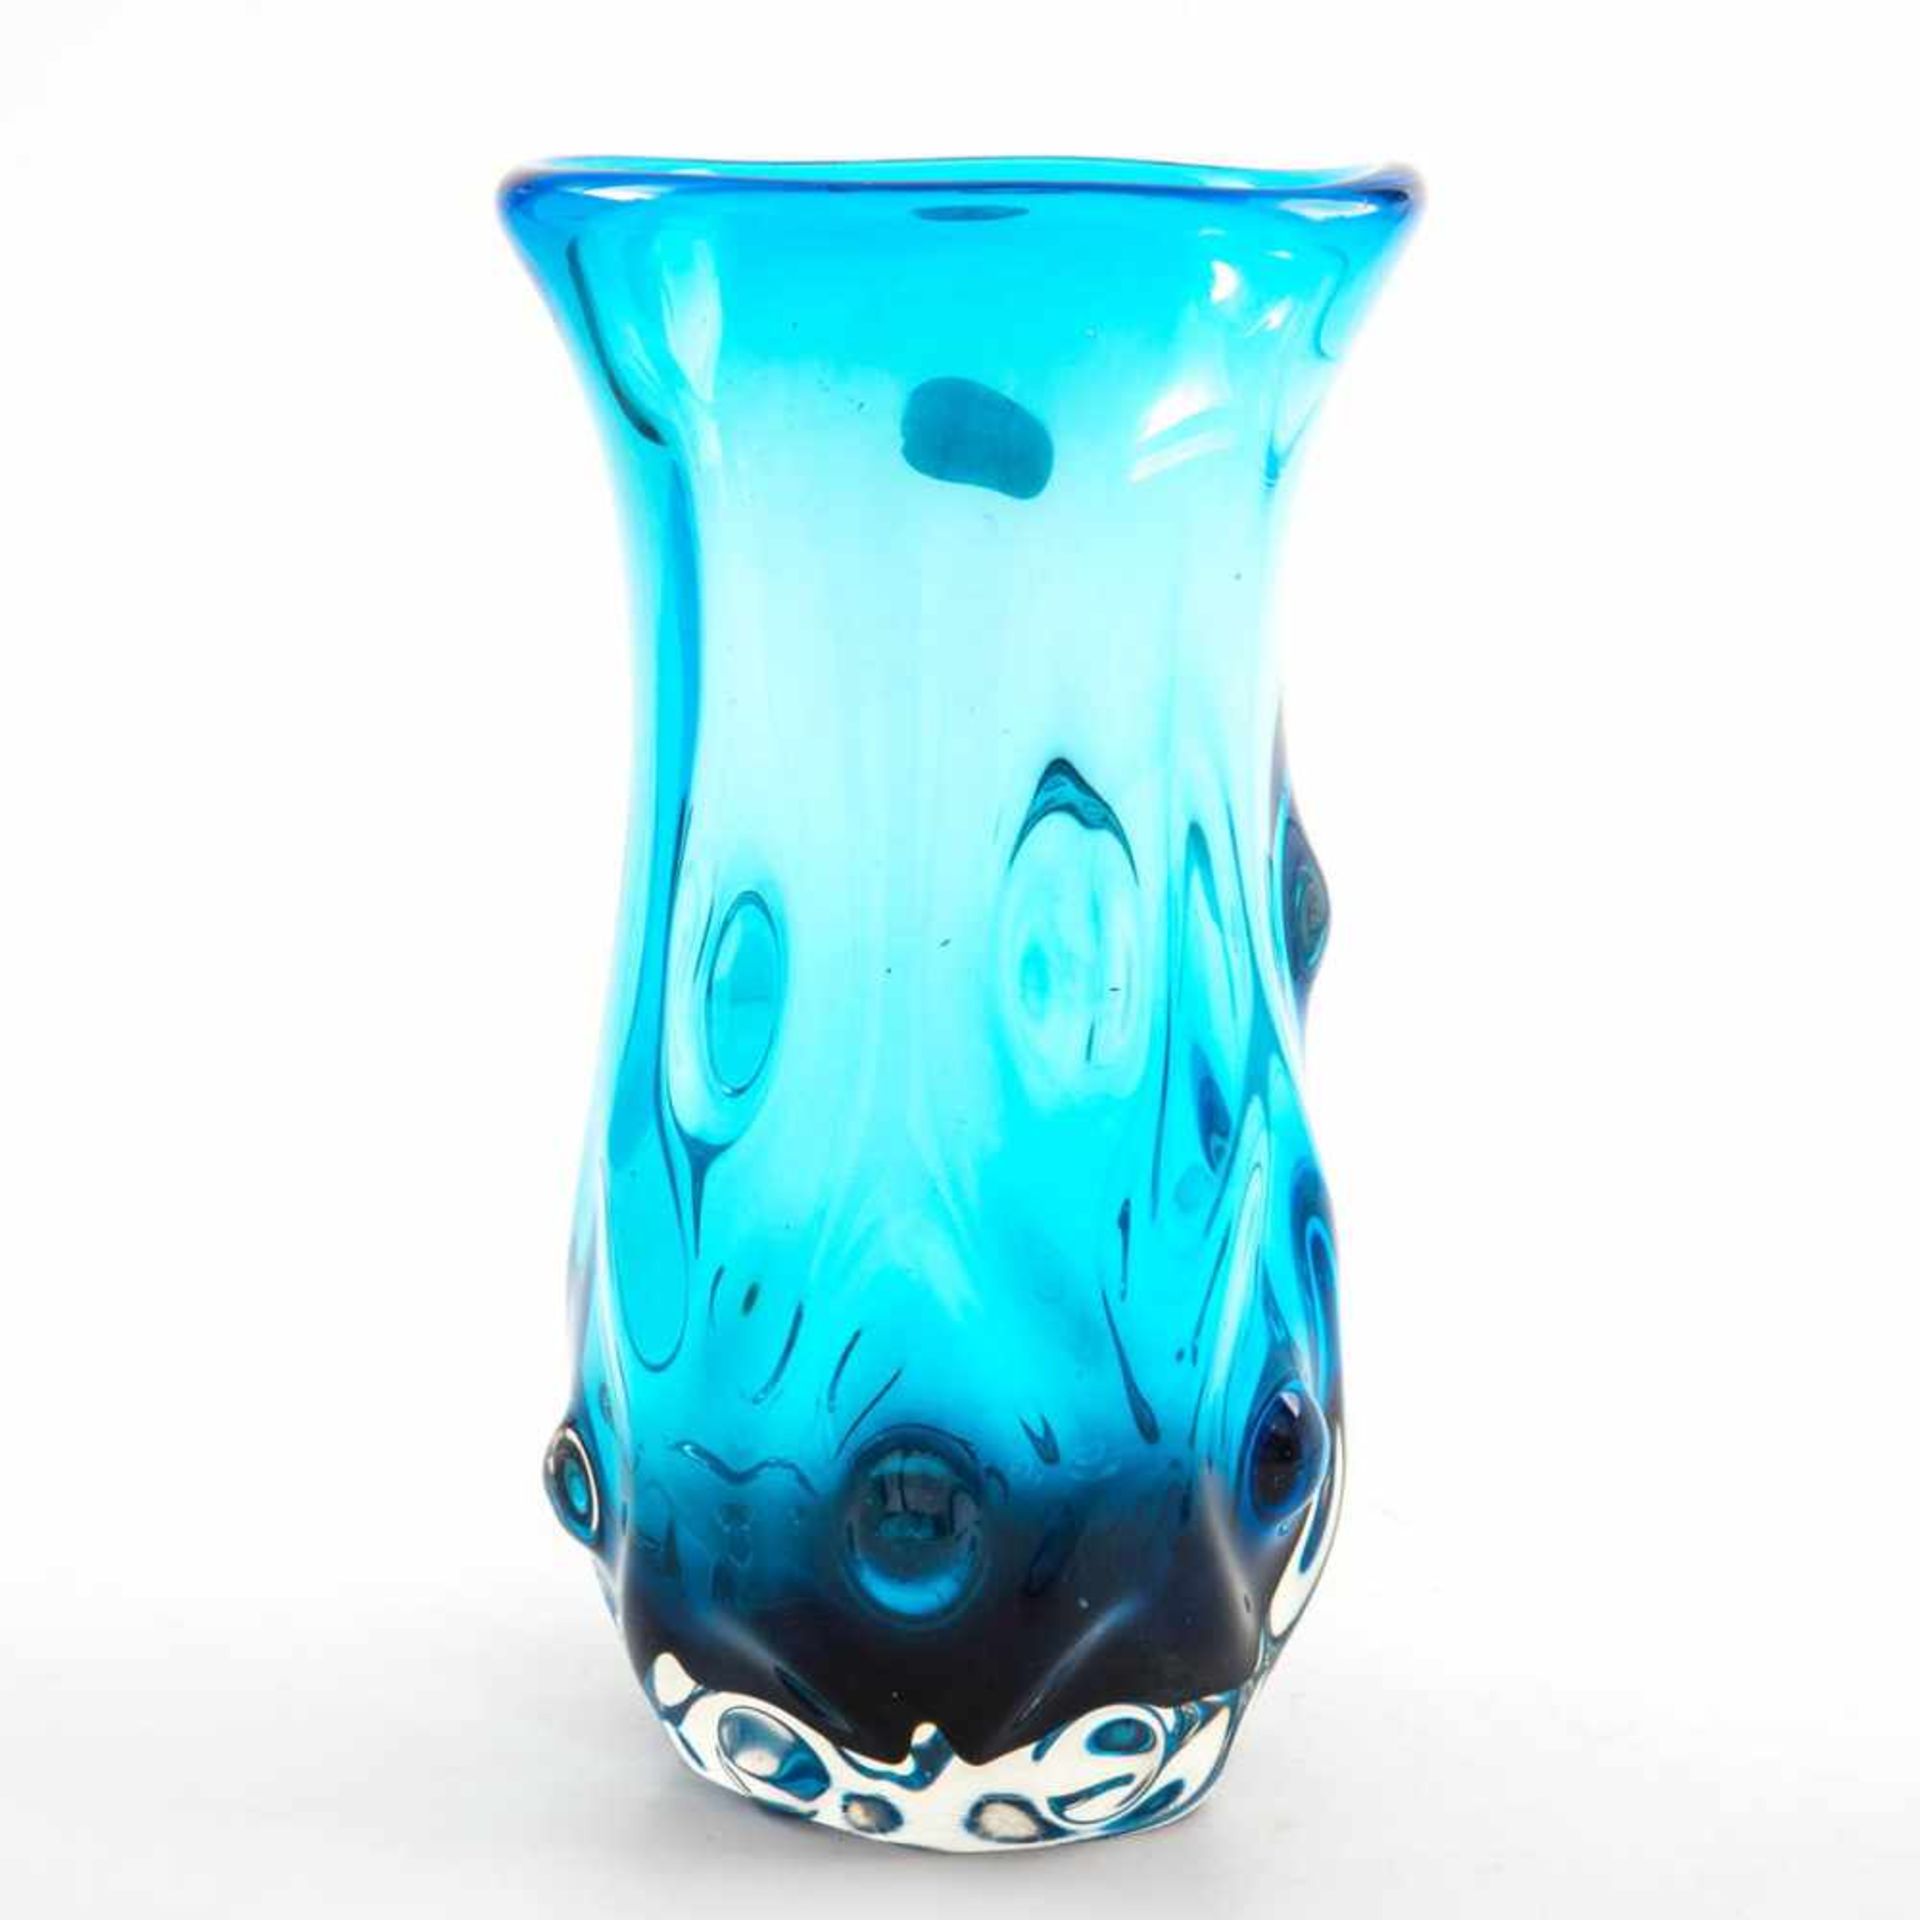 Ziervase, Schweden 20.Jh. Dickwandiges farbloses Glas mit hellblauer Einfärbung. Manufakturaufkleber